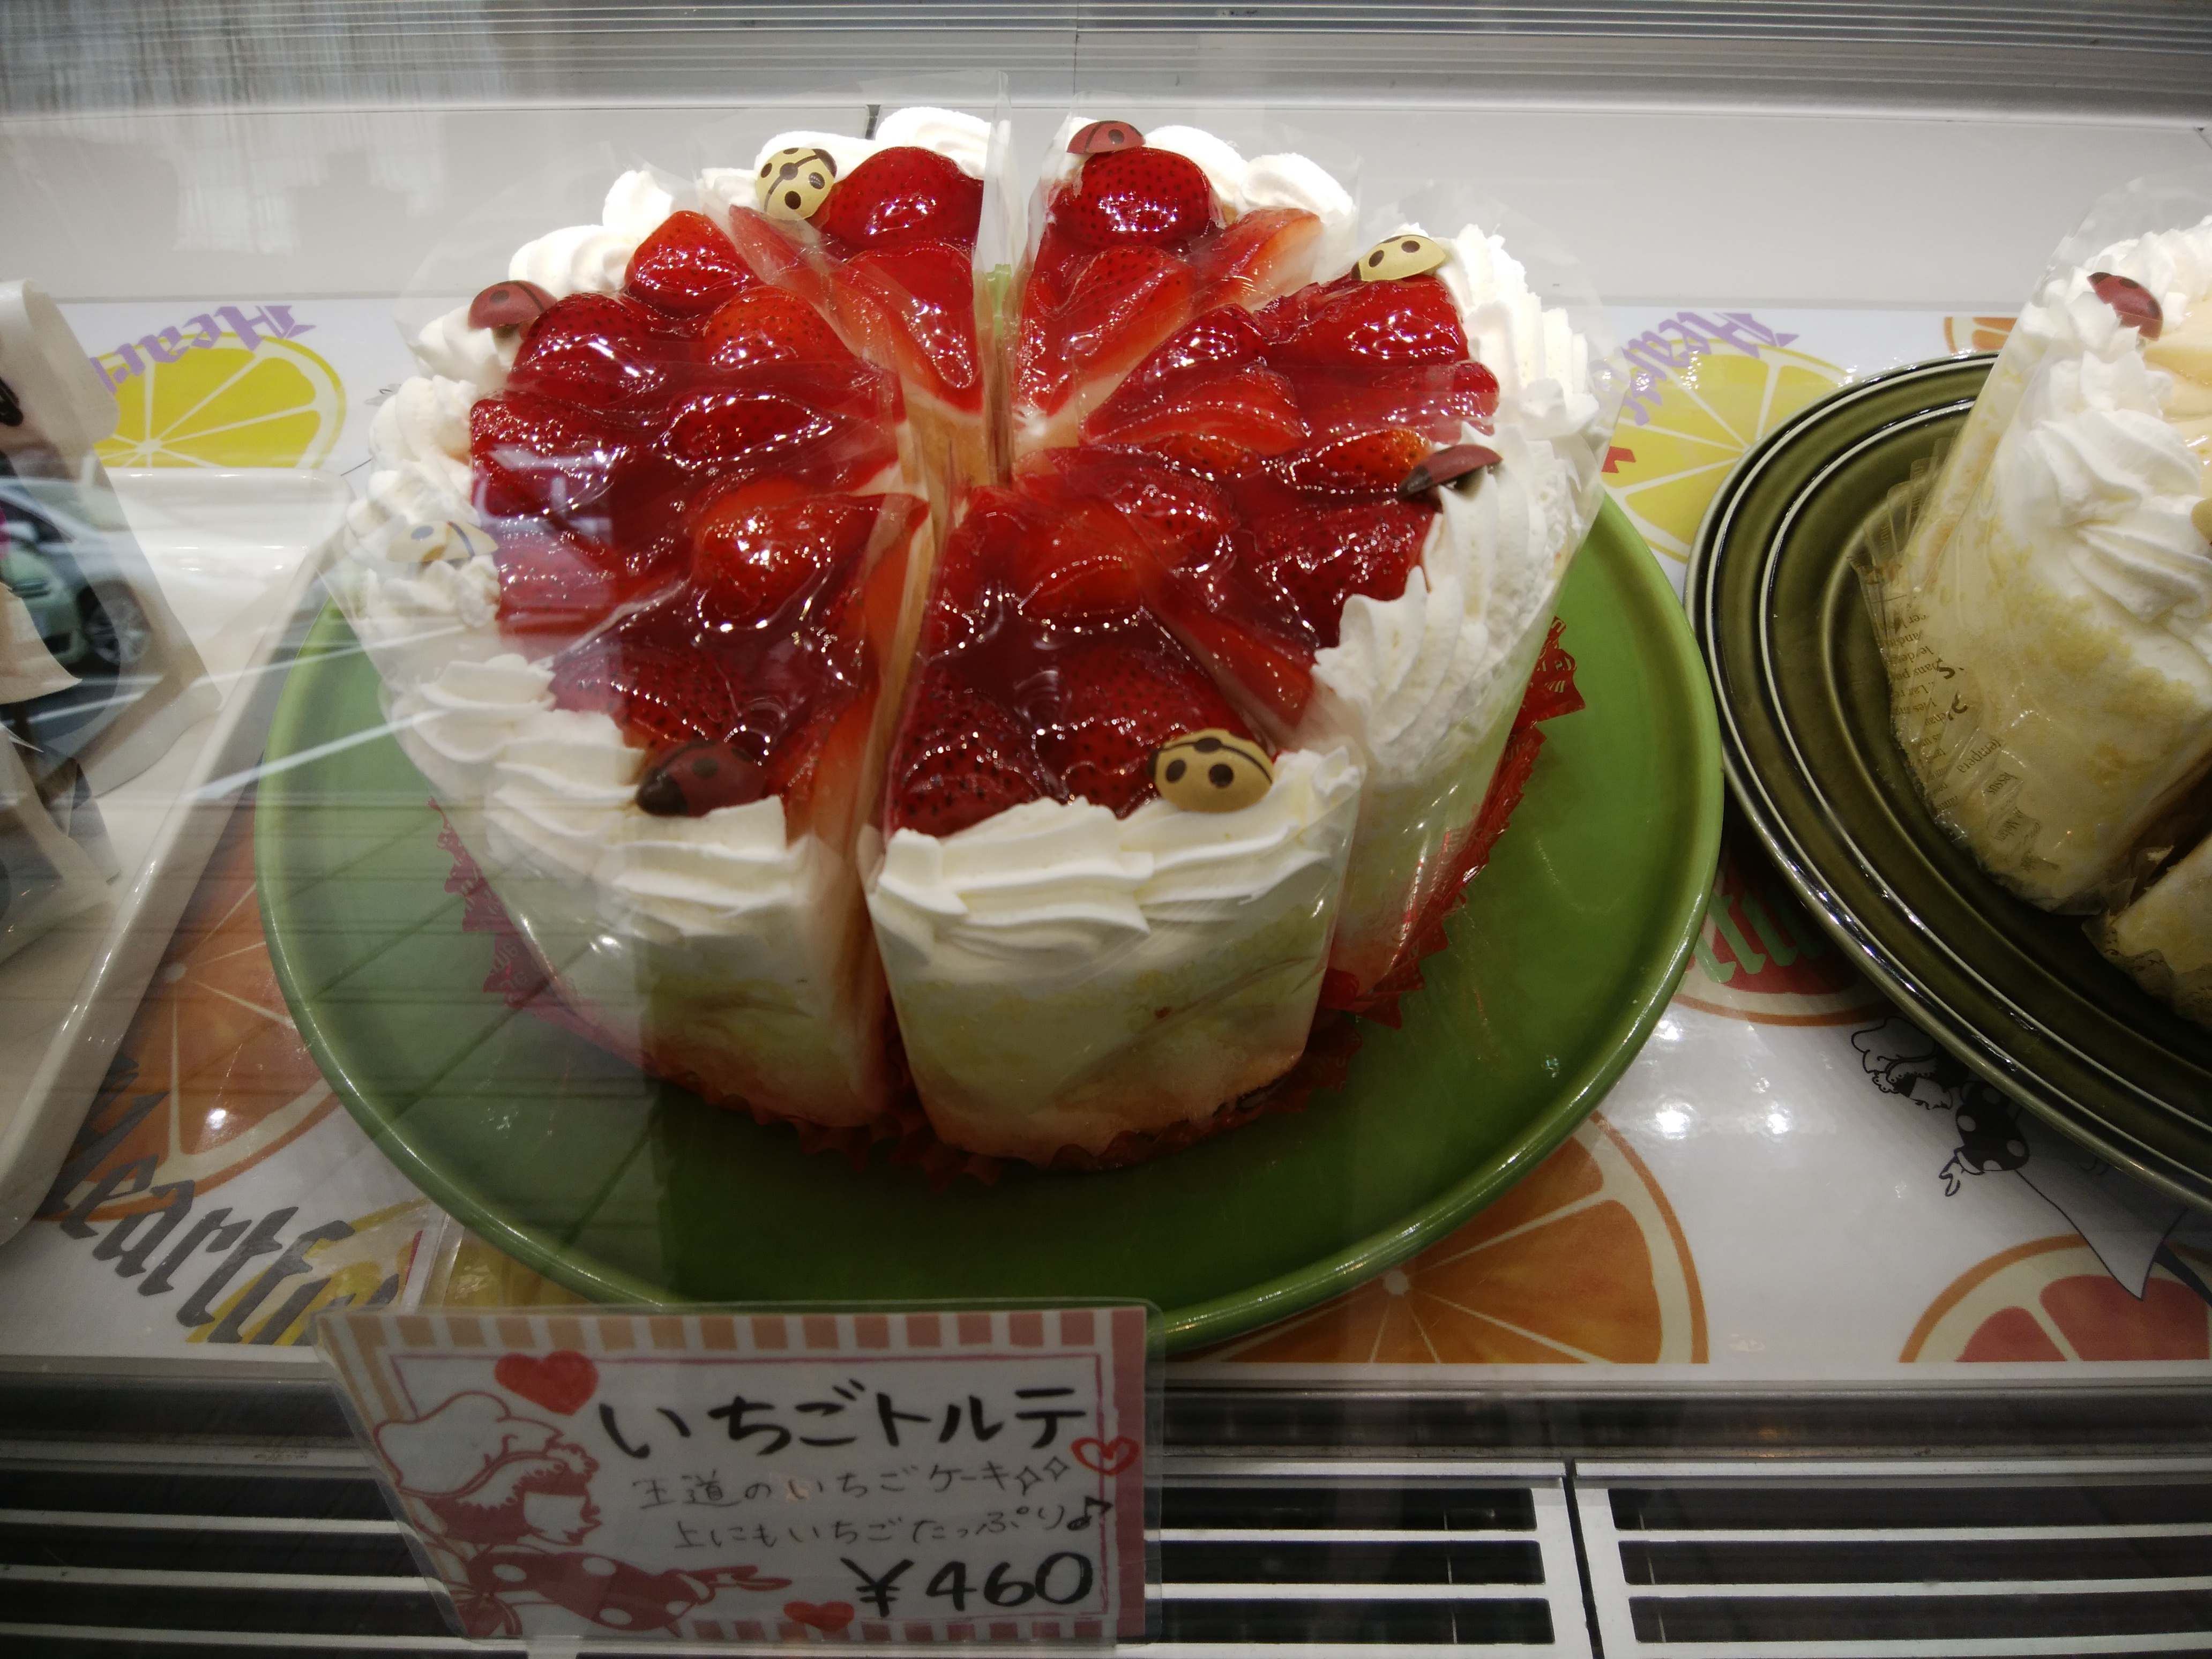 ケーキとジェラートのお店 ハートフル 彩都店 箕面市 三度の飯よりケーキ好き 三重県にもっとケーキバイキングを